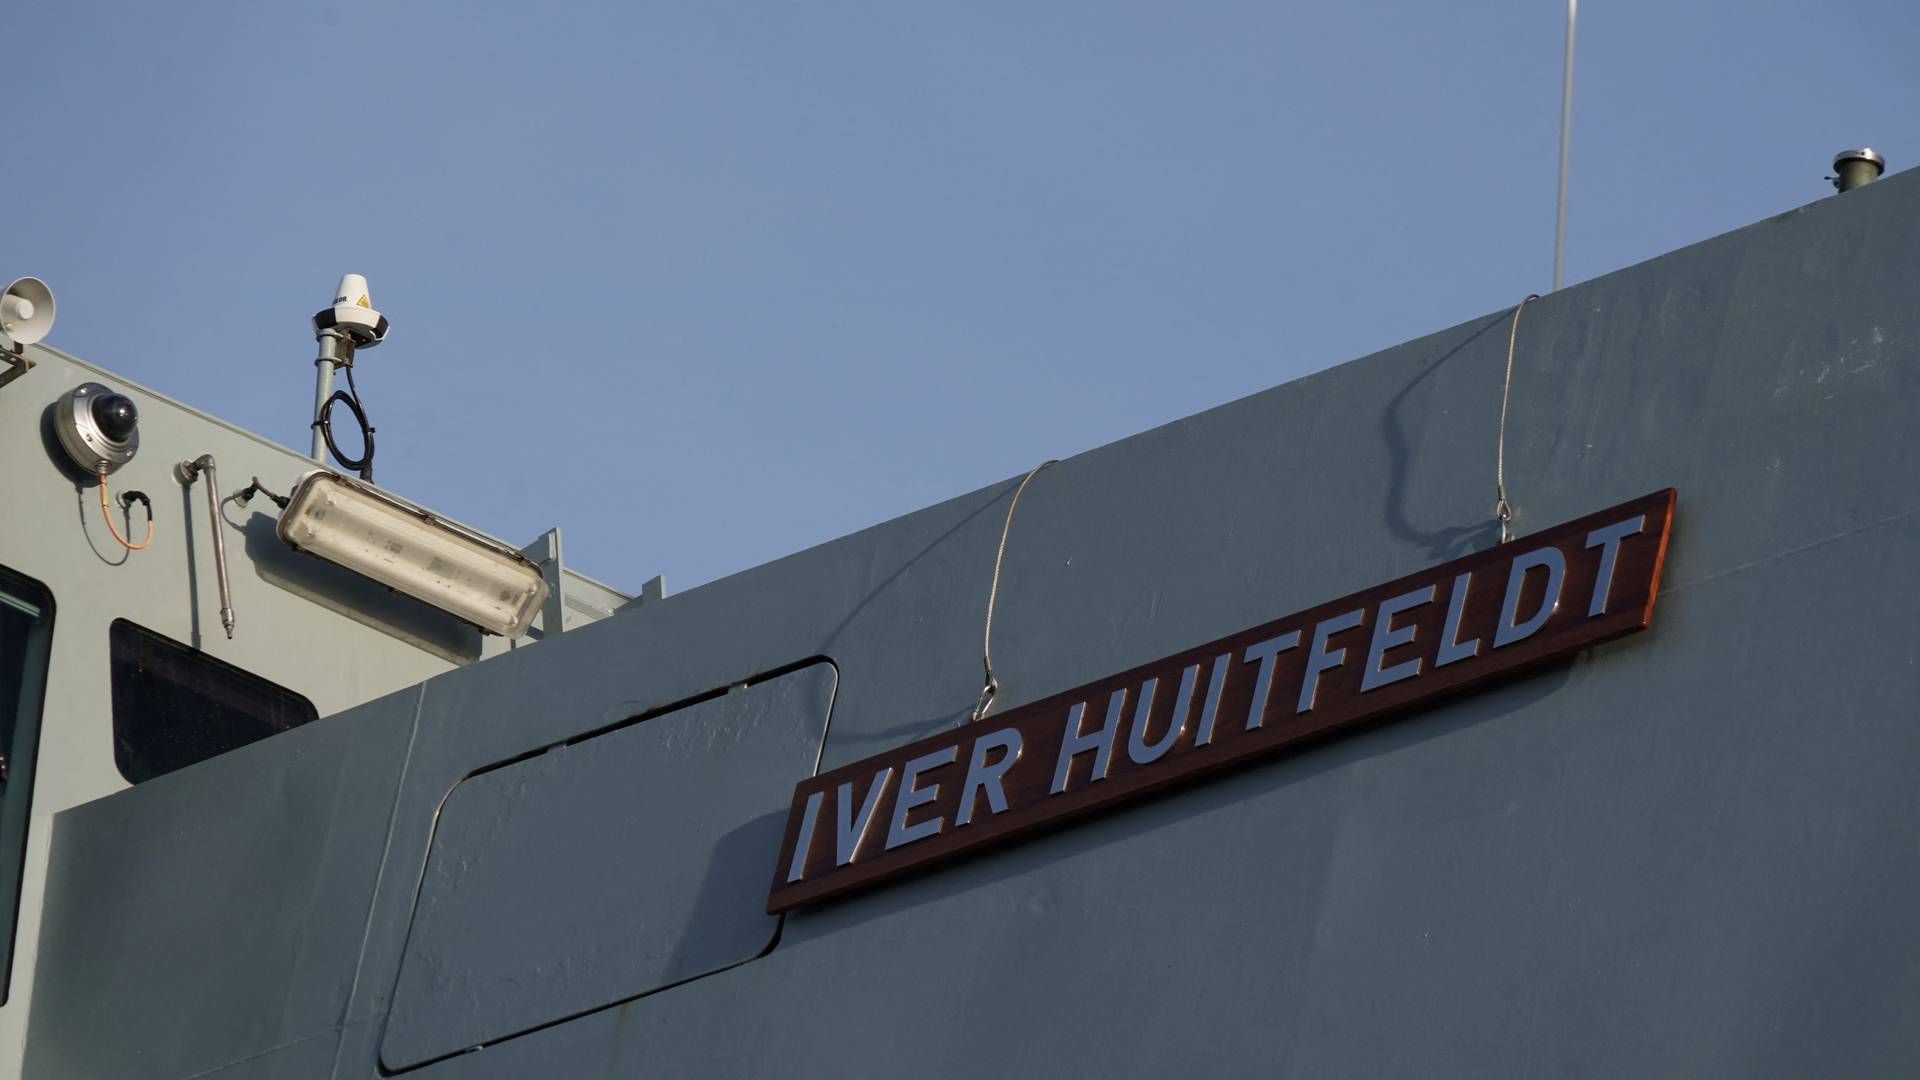 Søværnet har igangsat en større undersøgelse af den danske fregat Iver Huitfeldts beredskab, efter tekniske problemer under ildkamp i Det Røde Hav i marts. | Foto: Tom Little/Reuters/Ritzau Scanpix